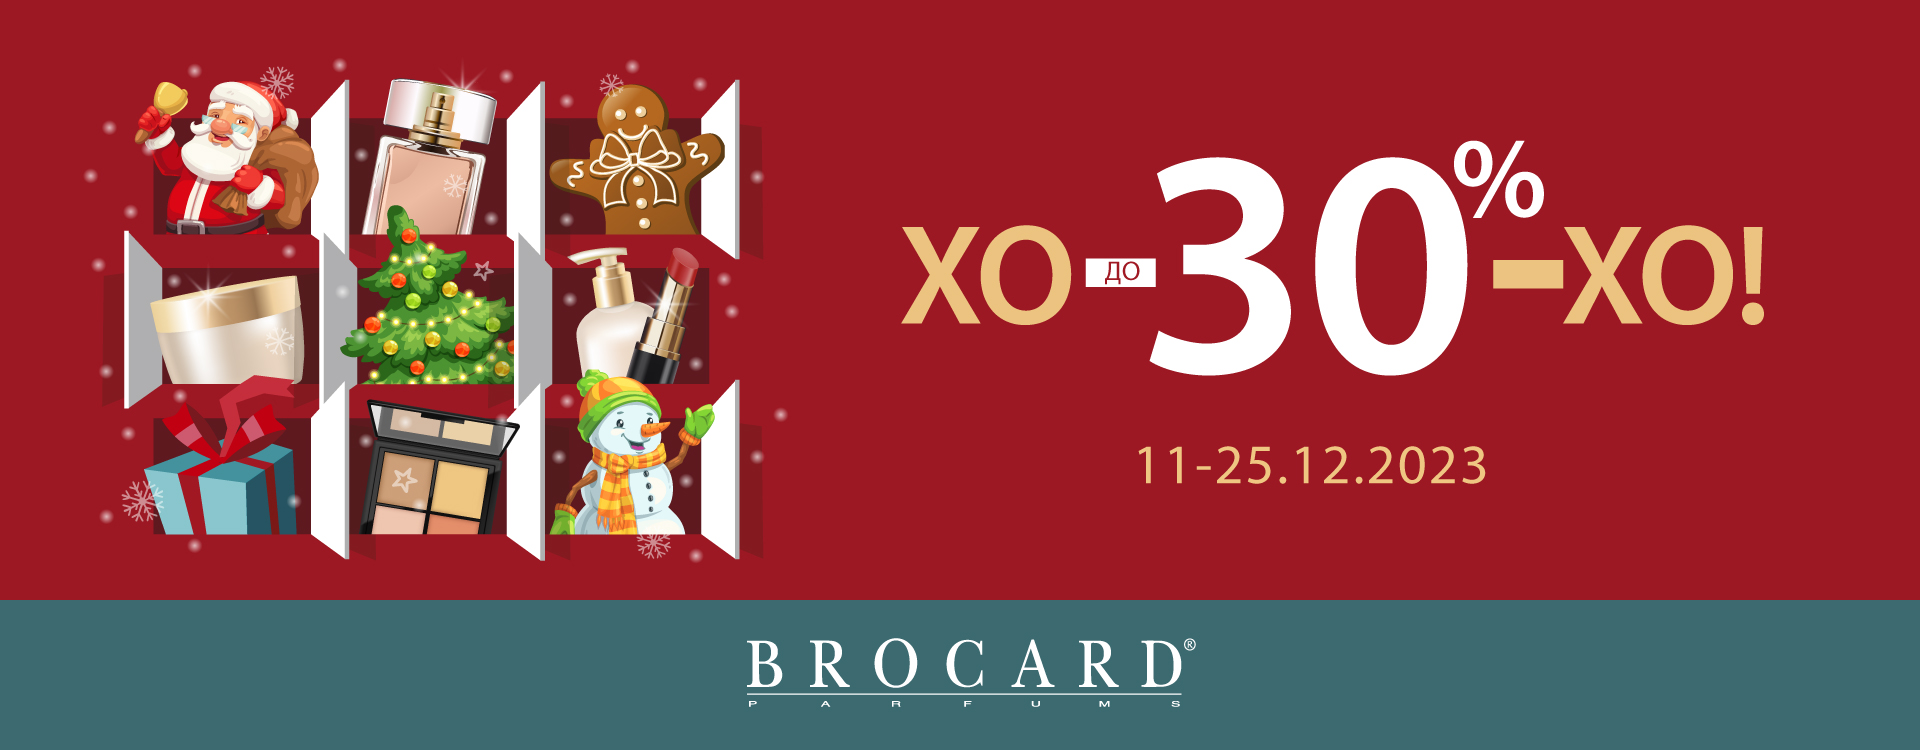 HO-HO-HO: discounts up to 30% at BROCARD